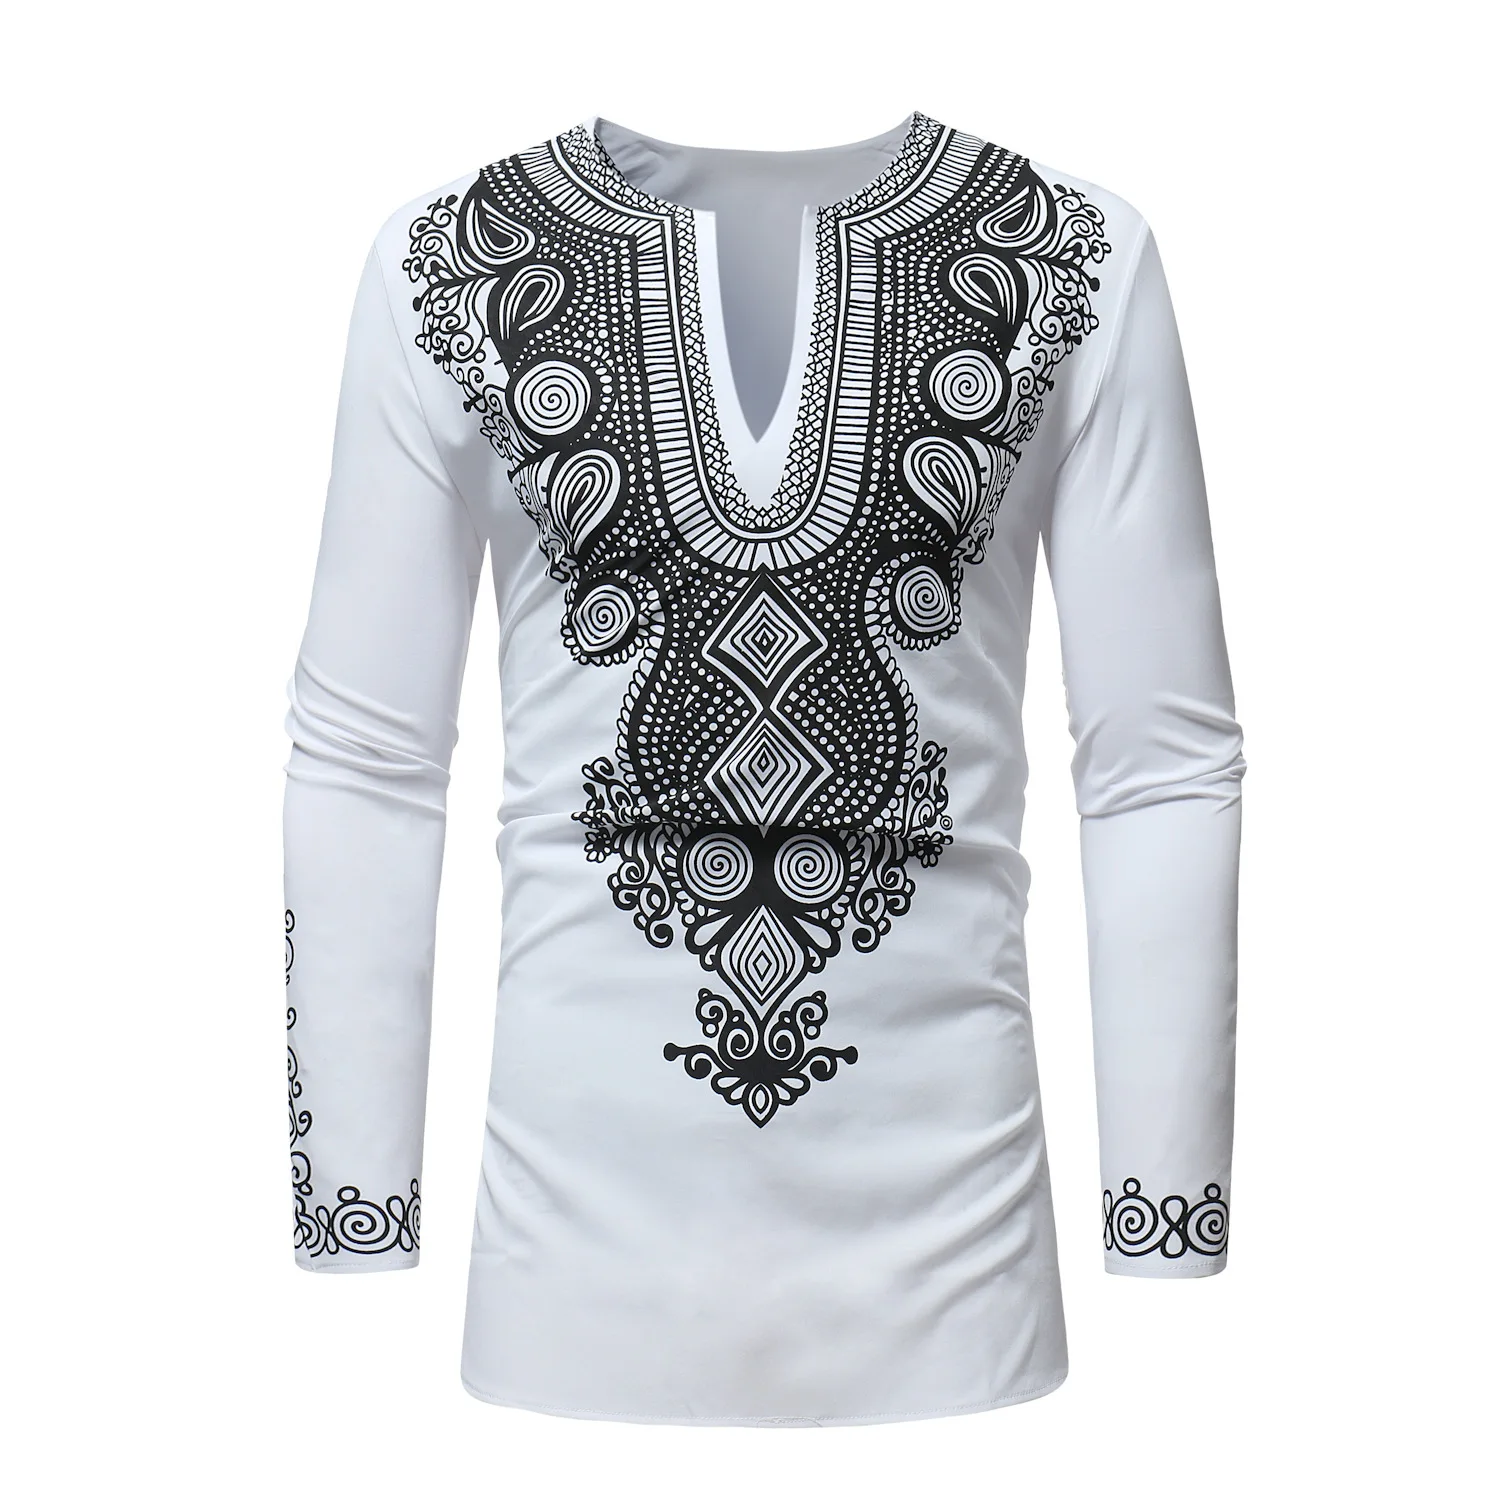 Африканская одежда для мужчин с принтом богатый Базен длинный рукав принт Дашики белый Анкара Новая мода Топ Мужская одежда - Цвет: White